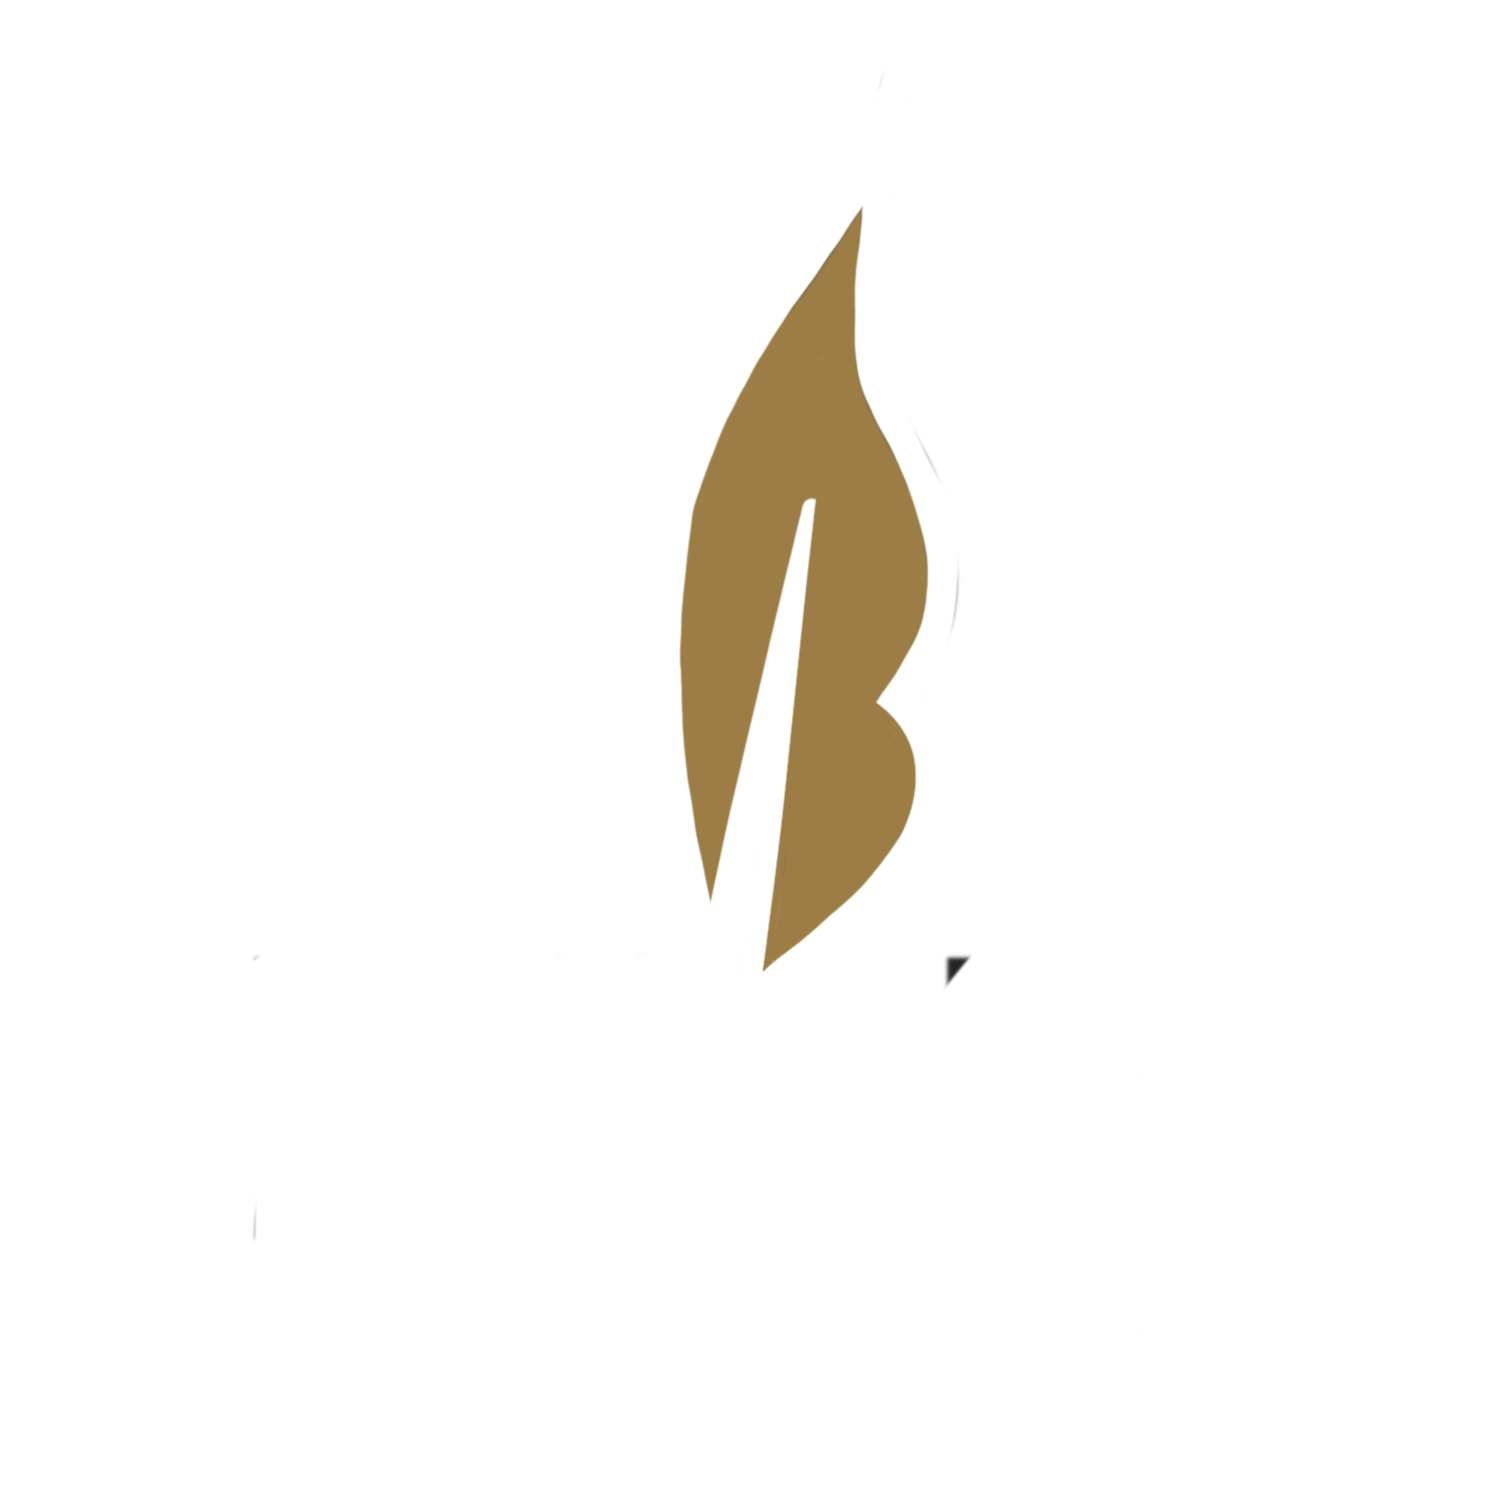 LIGHTBEARMedia